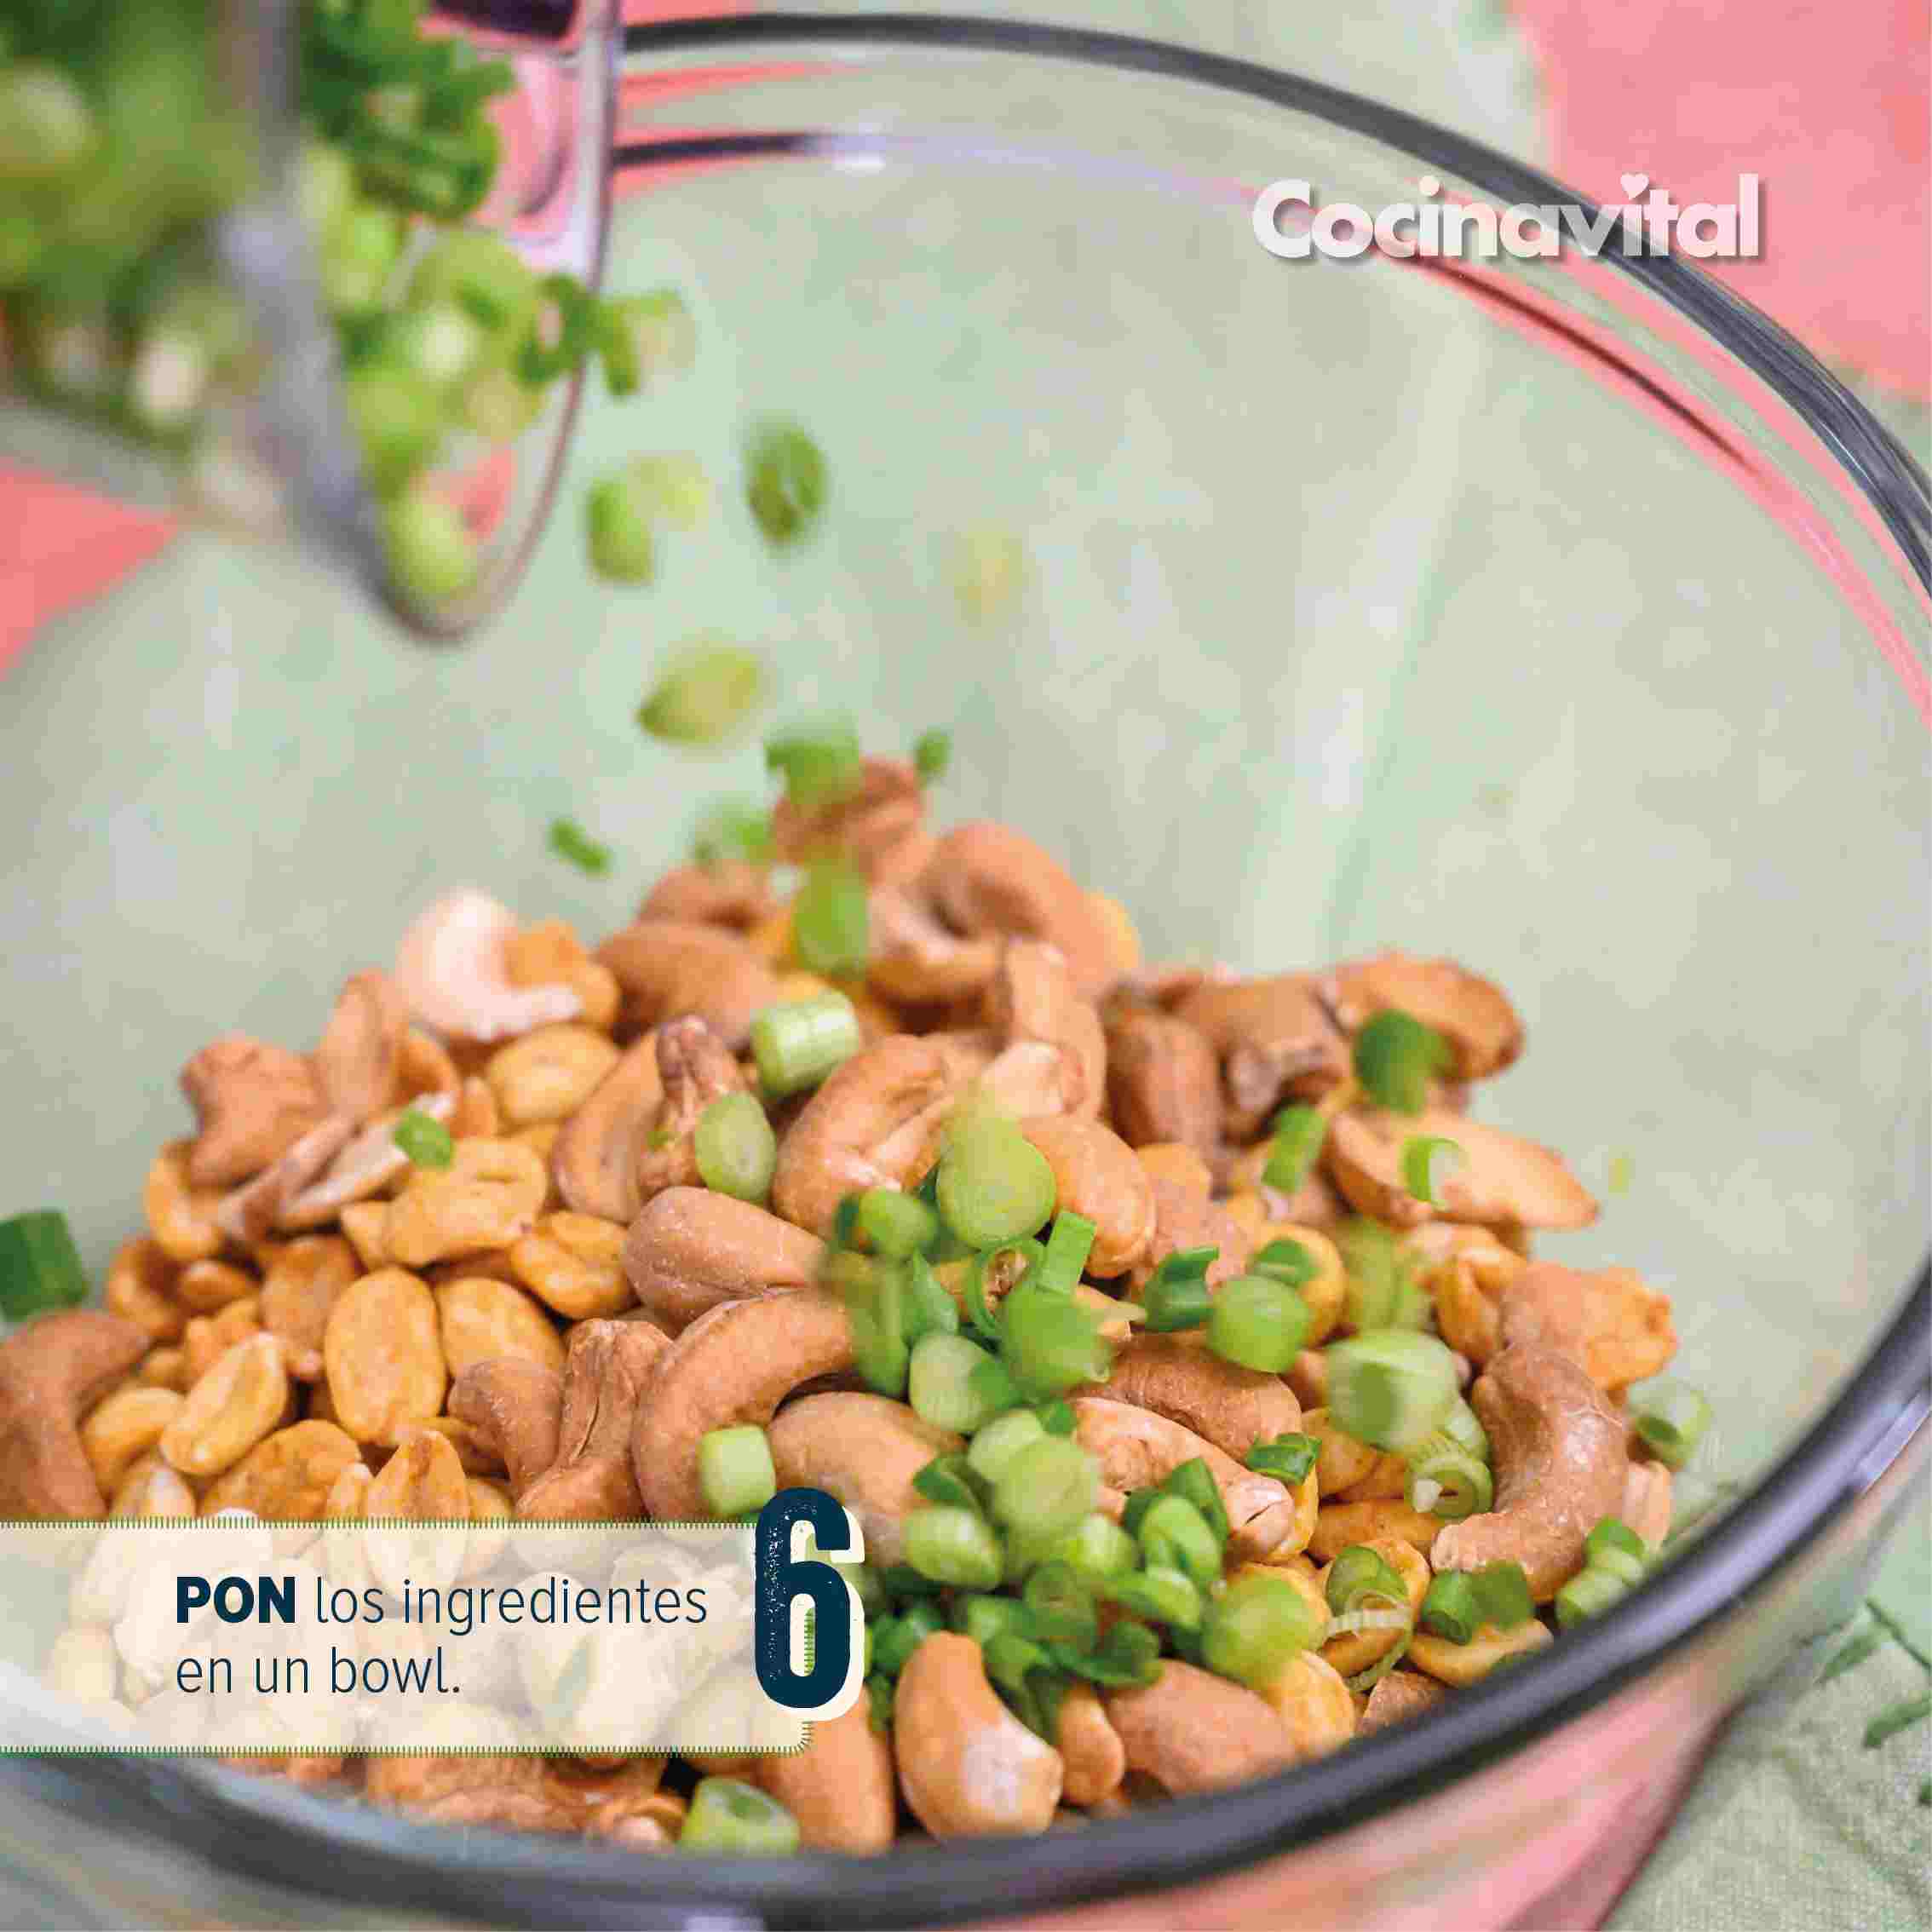 Agrega los ingredientes en un bowl 